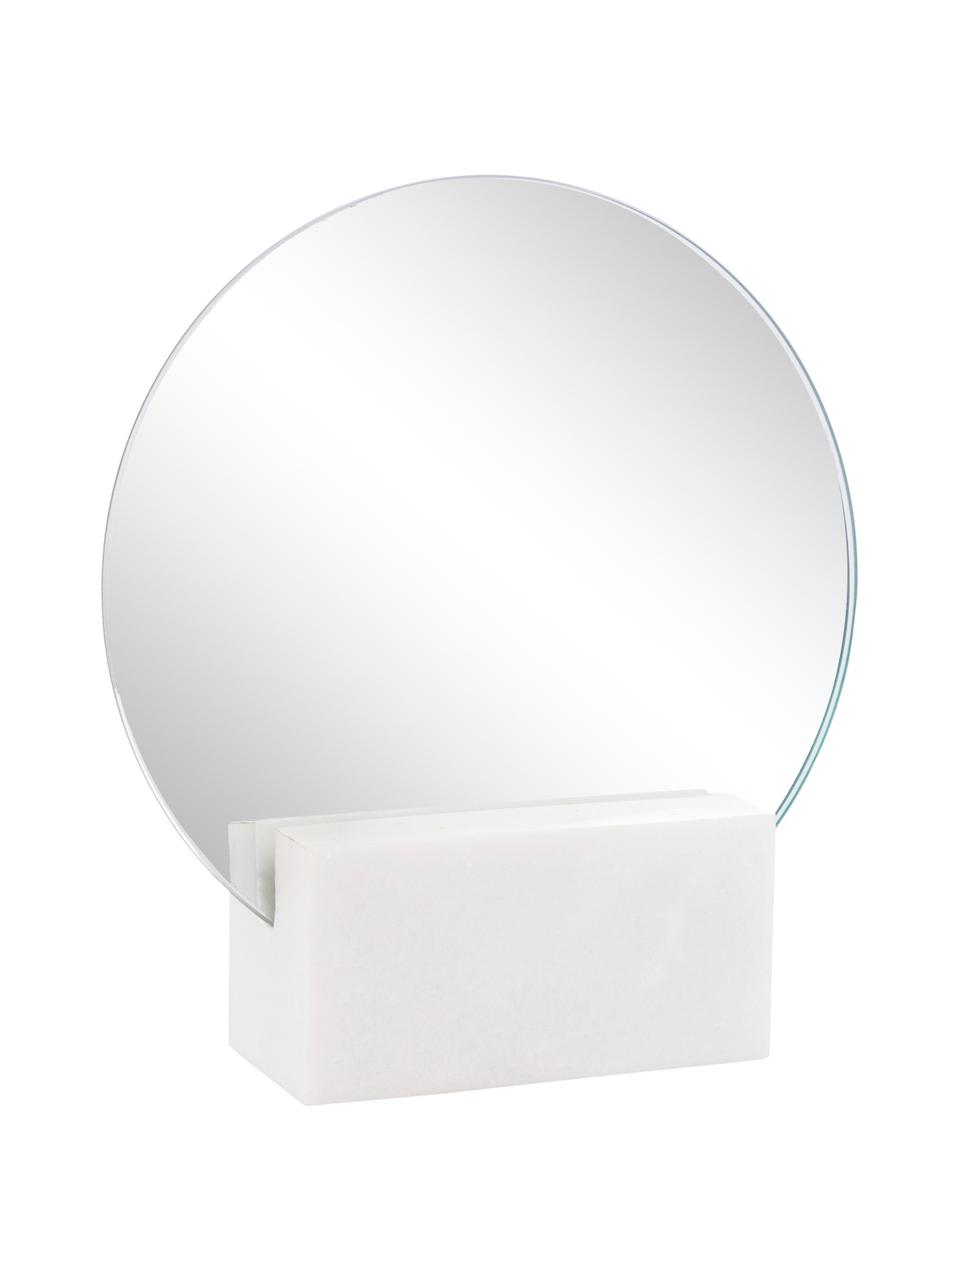 Kosmetikspiegel Humana, Spiegelfläche: Spiegelglas, Weiss, 17 x 19 cm